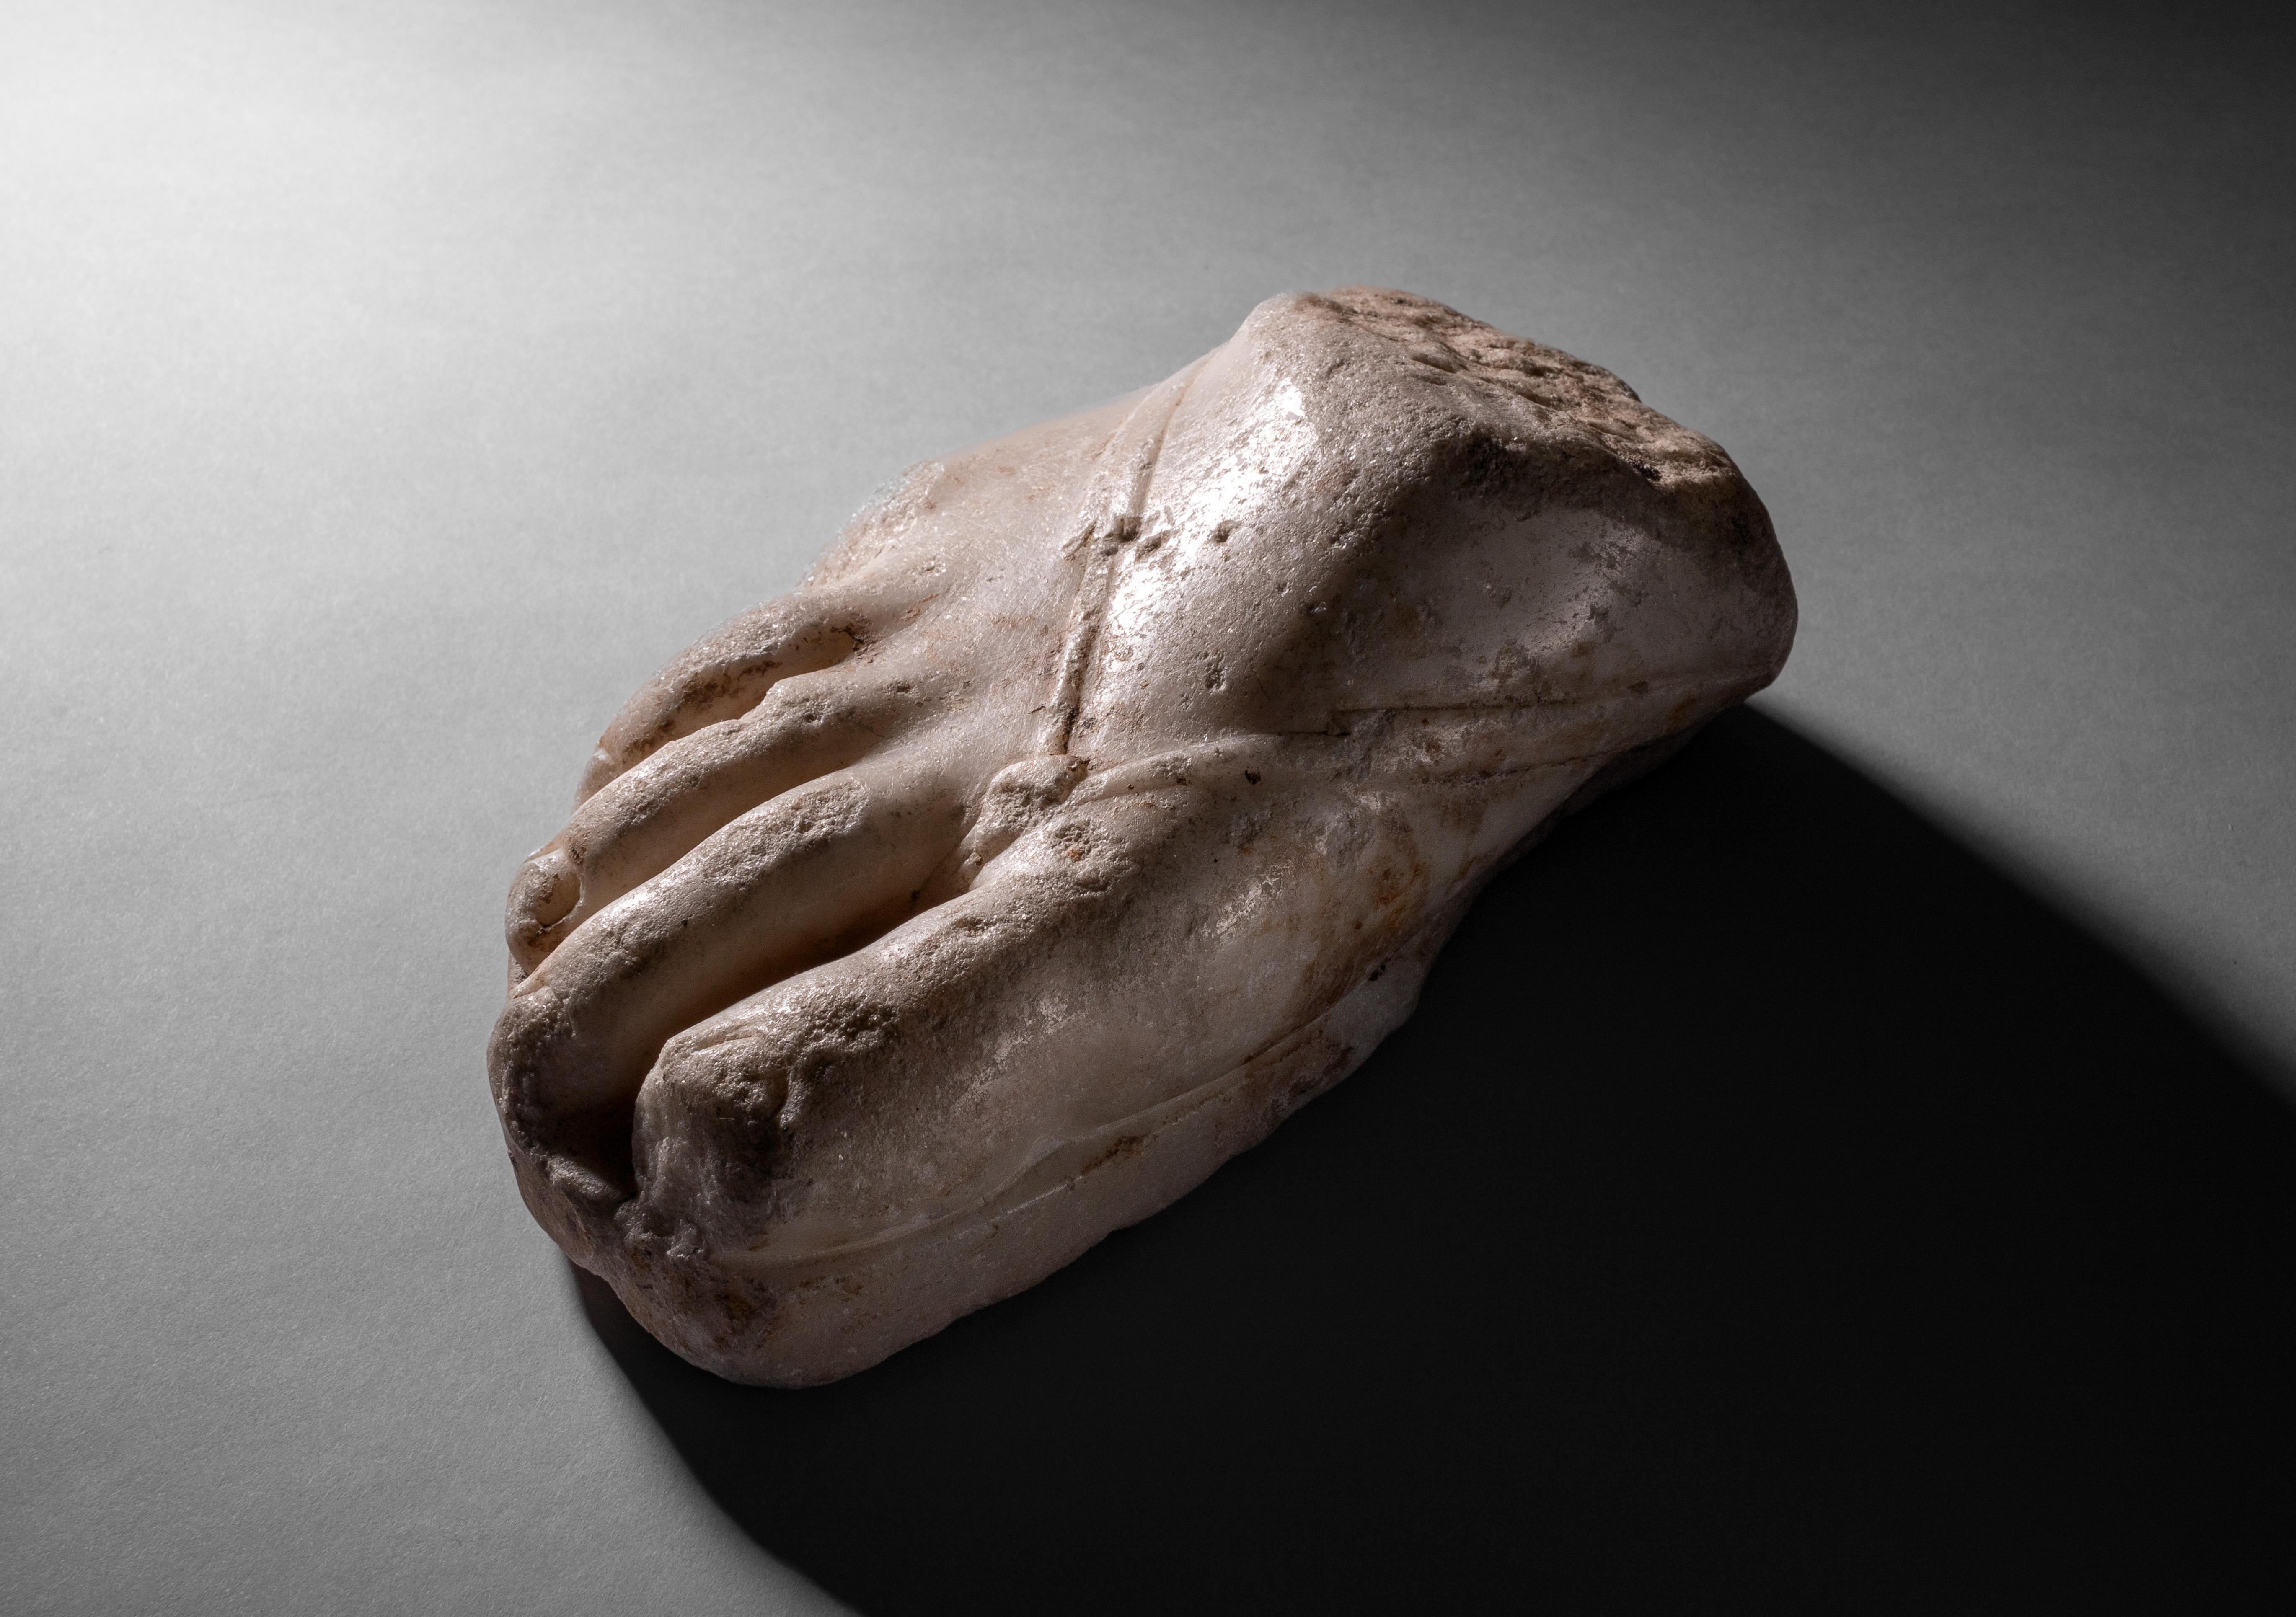 Fragment de pied droit en marbre romain avec sandale
Circa 1st - 2nd Century A.D.

Fragment de marbre romain évocateur, préservant la partie antérieure d'un pied sandalé surdimensionné. Les orteils, les ongles et l'arête du pied ont été sculptés